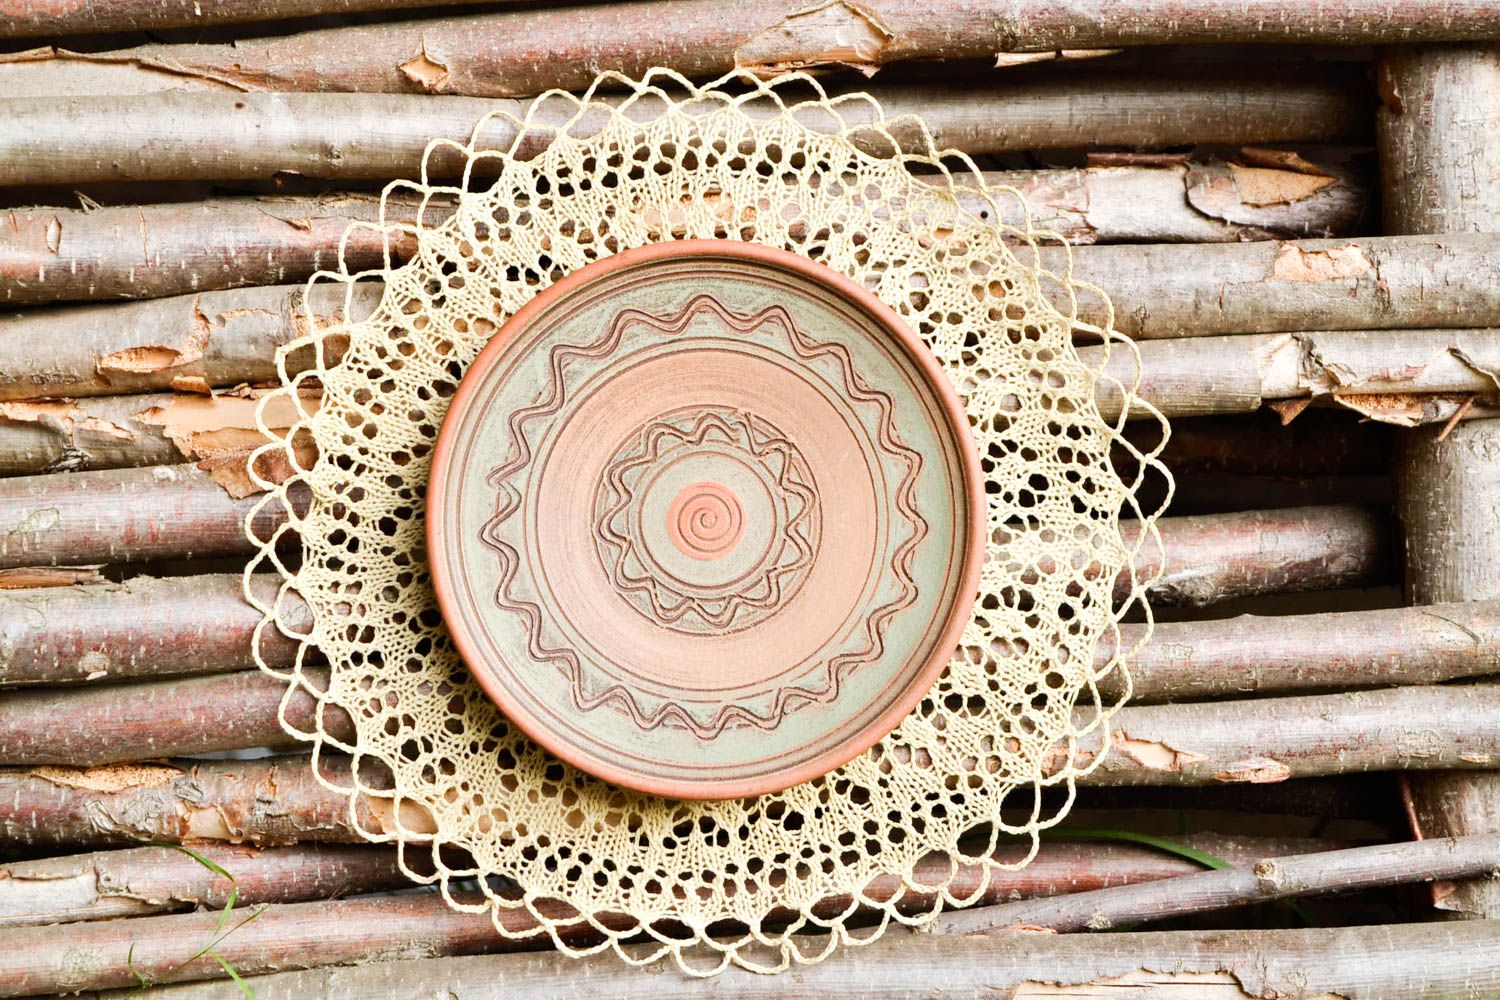 Расписная тарелка хенд мейд глиняная посуда керамическая тарелка эко стиль фото 1